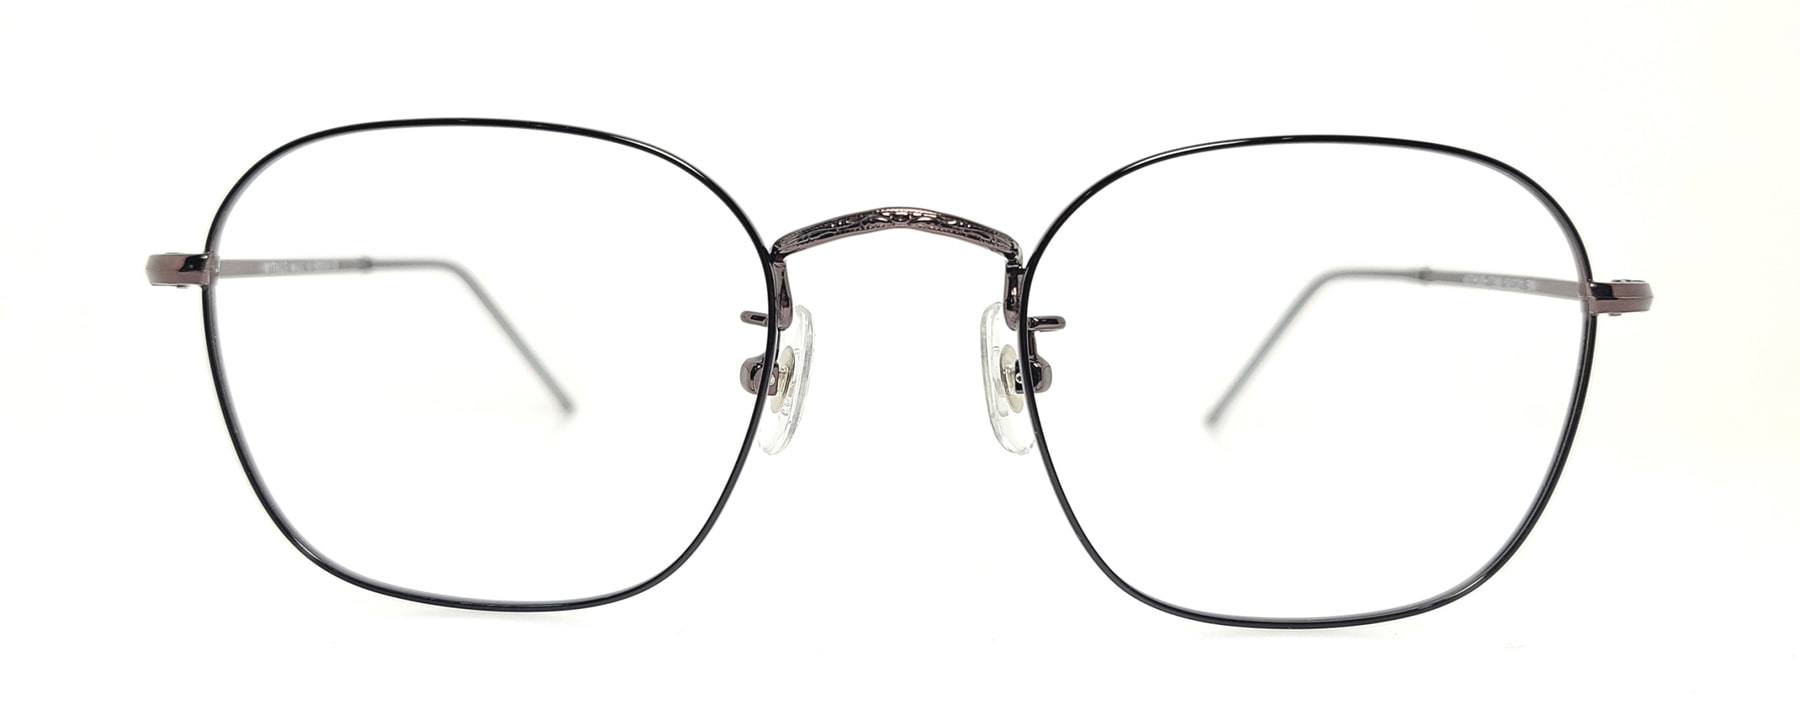 WITHUS-7380, Korean glasses, sunglasses, eyeglasses, glasses